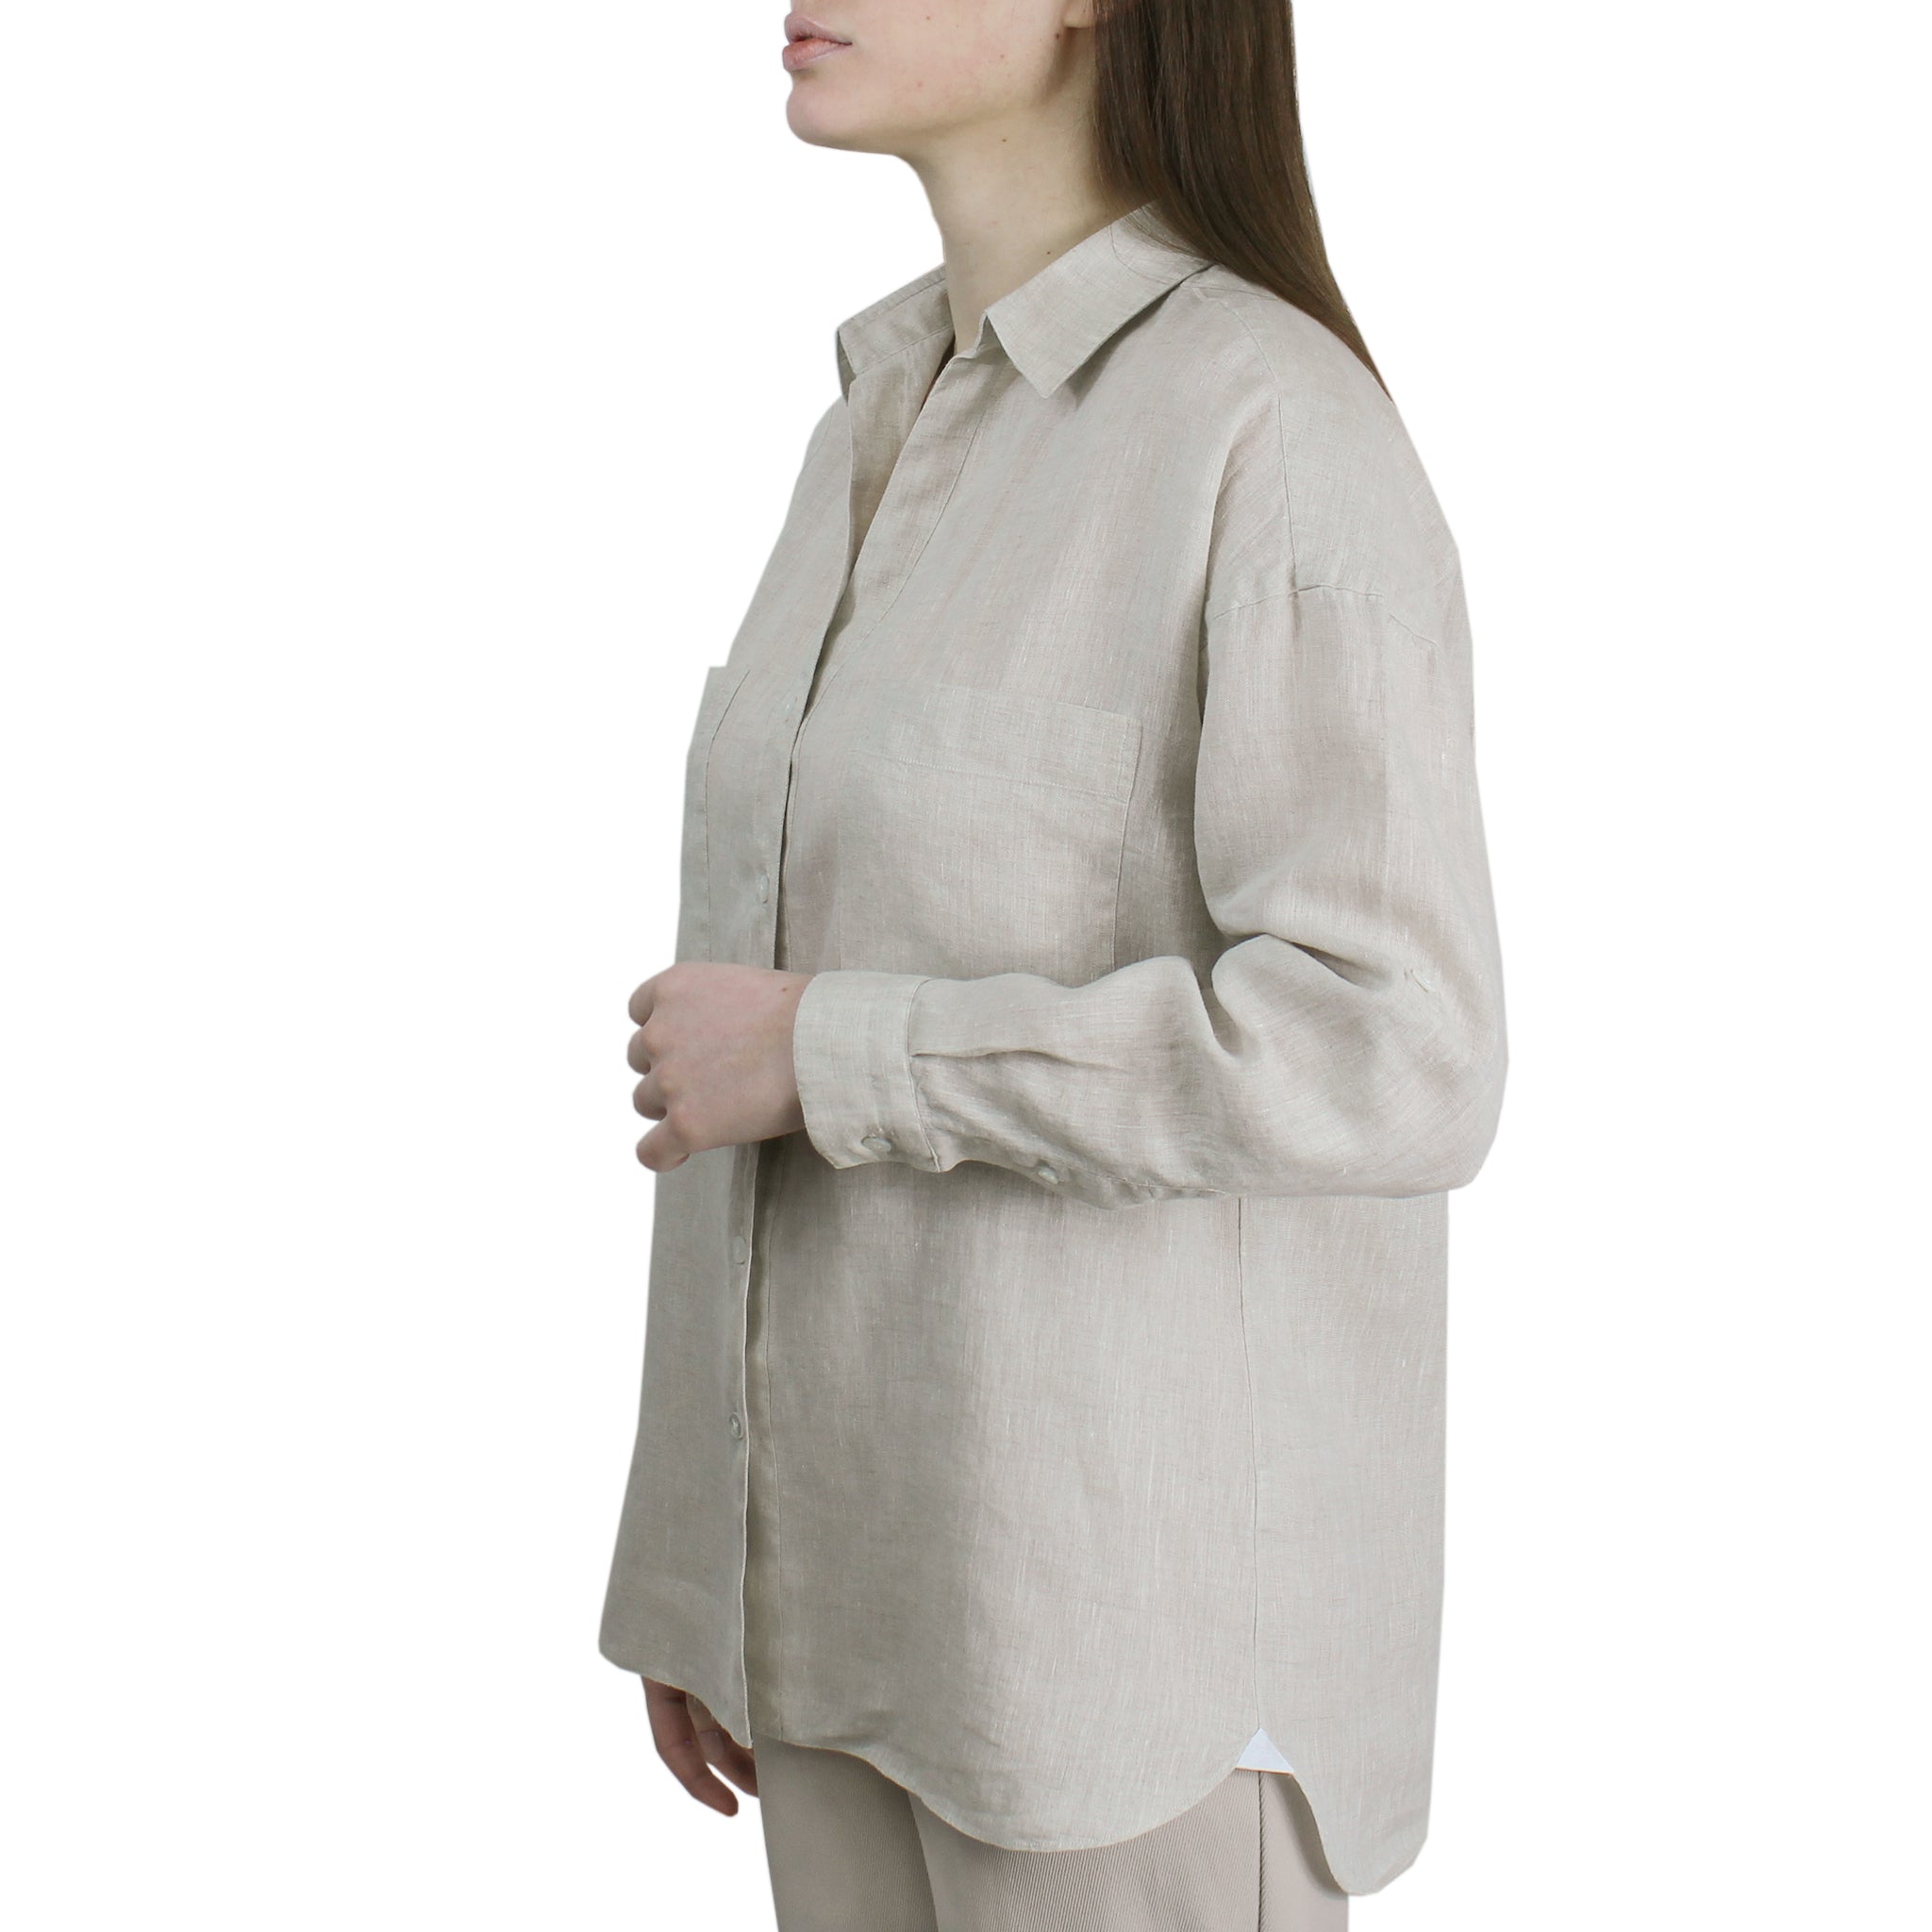 Camicia in lino color sabbia con tasche e fettuccia per regolare la manica